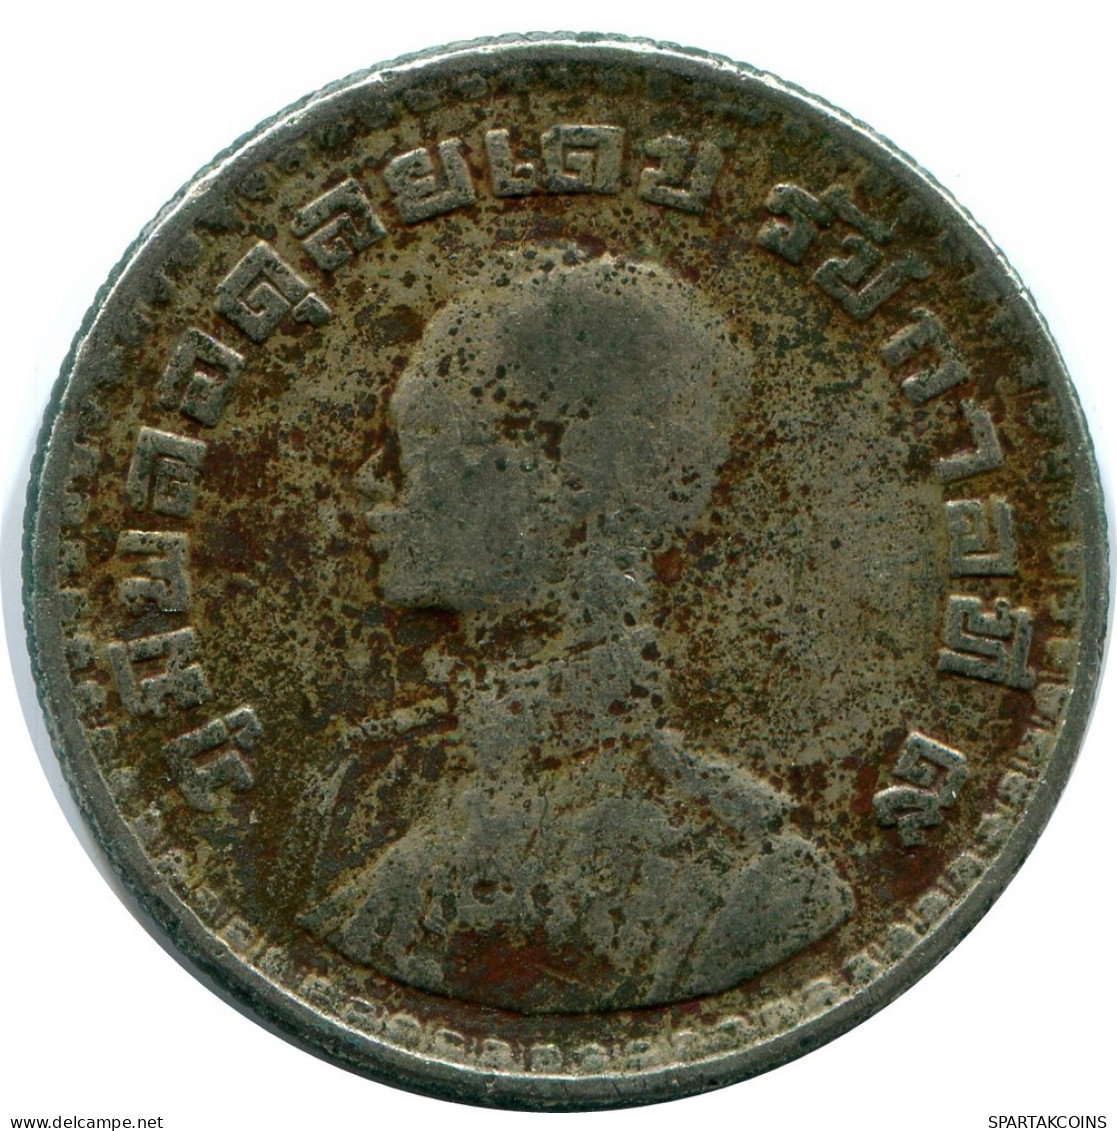 1 BAHT 1962 THAILAND RAMA IX Coin #AZ131.U.A - Thailand